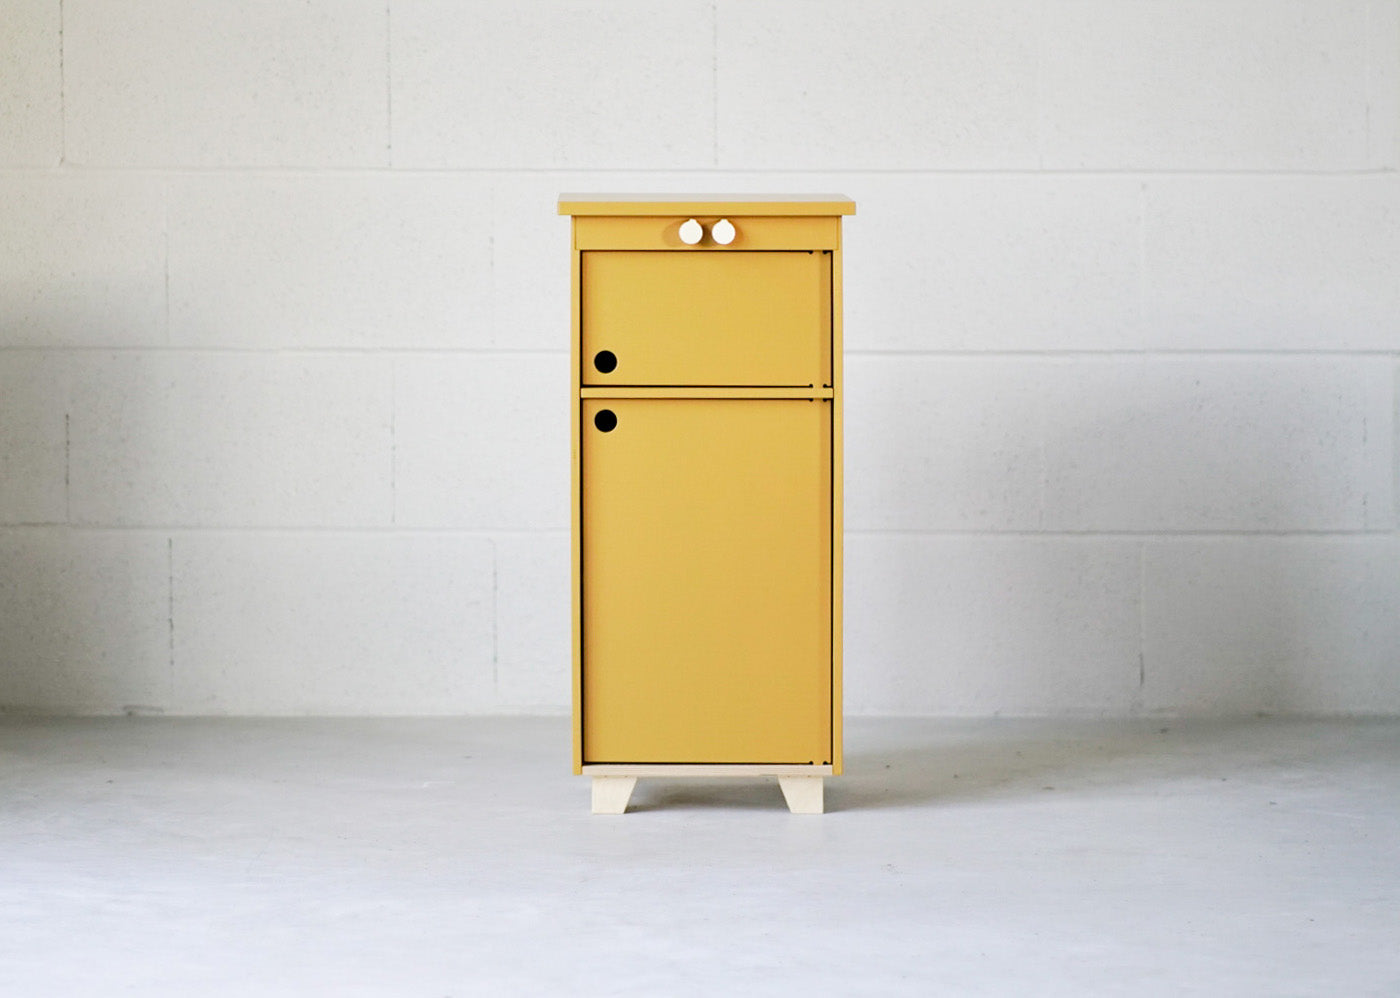 Midmini Lilac Plyholz Kinderzimmermöbel Spielkühlschrank: Ein süßer Spielkühlschrank für das Kinderzimmer